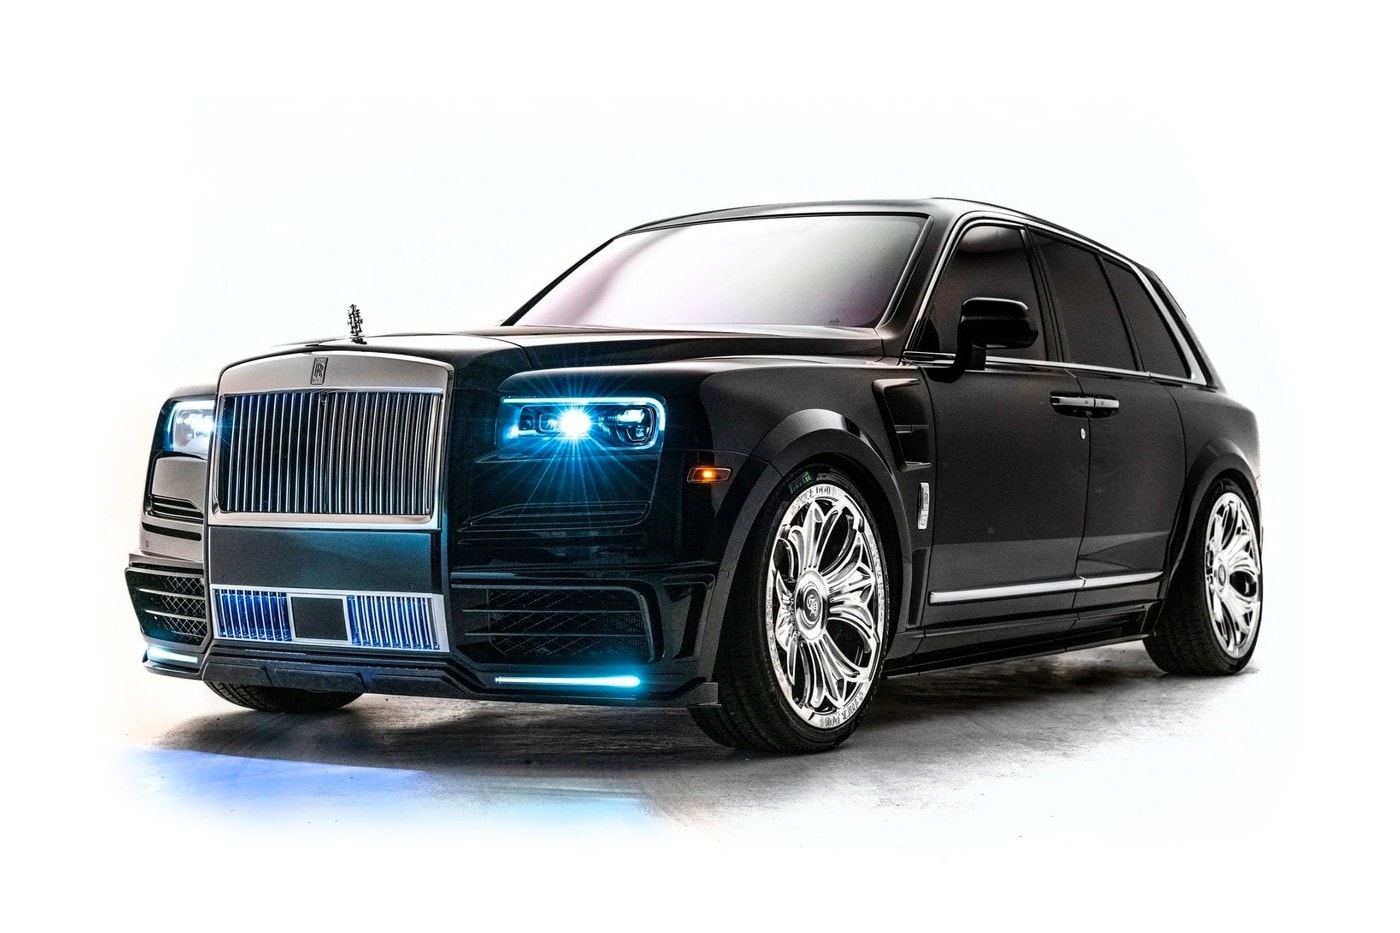 Drake 專屬 Chrome Hearts 定製版本 Rolls-Royce Cullinan 正式登場